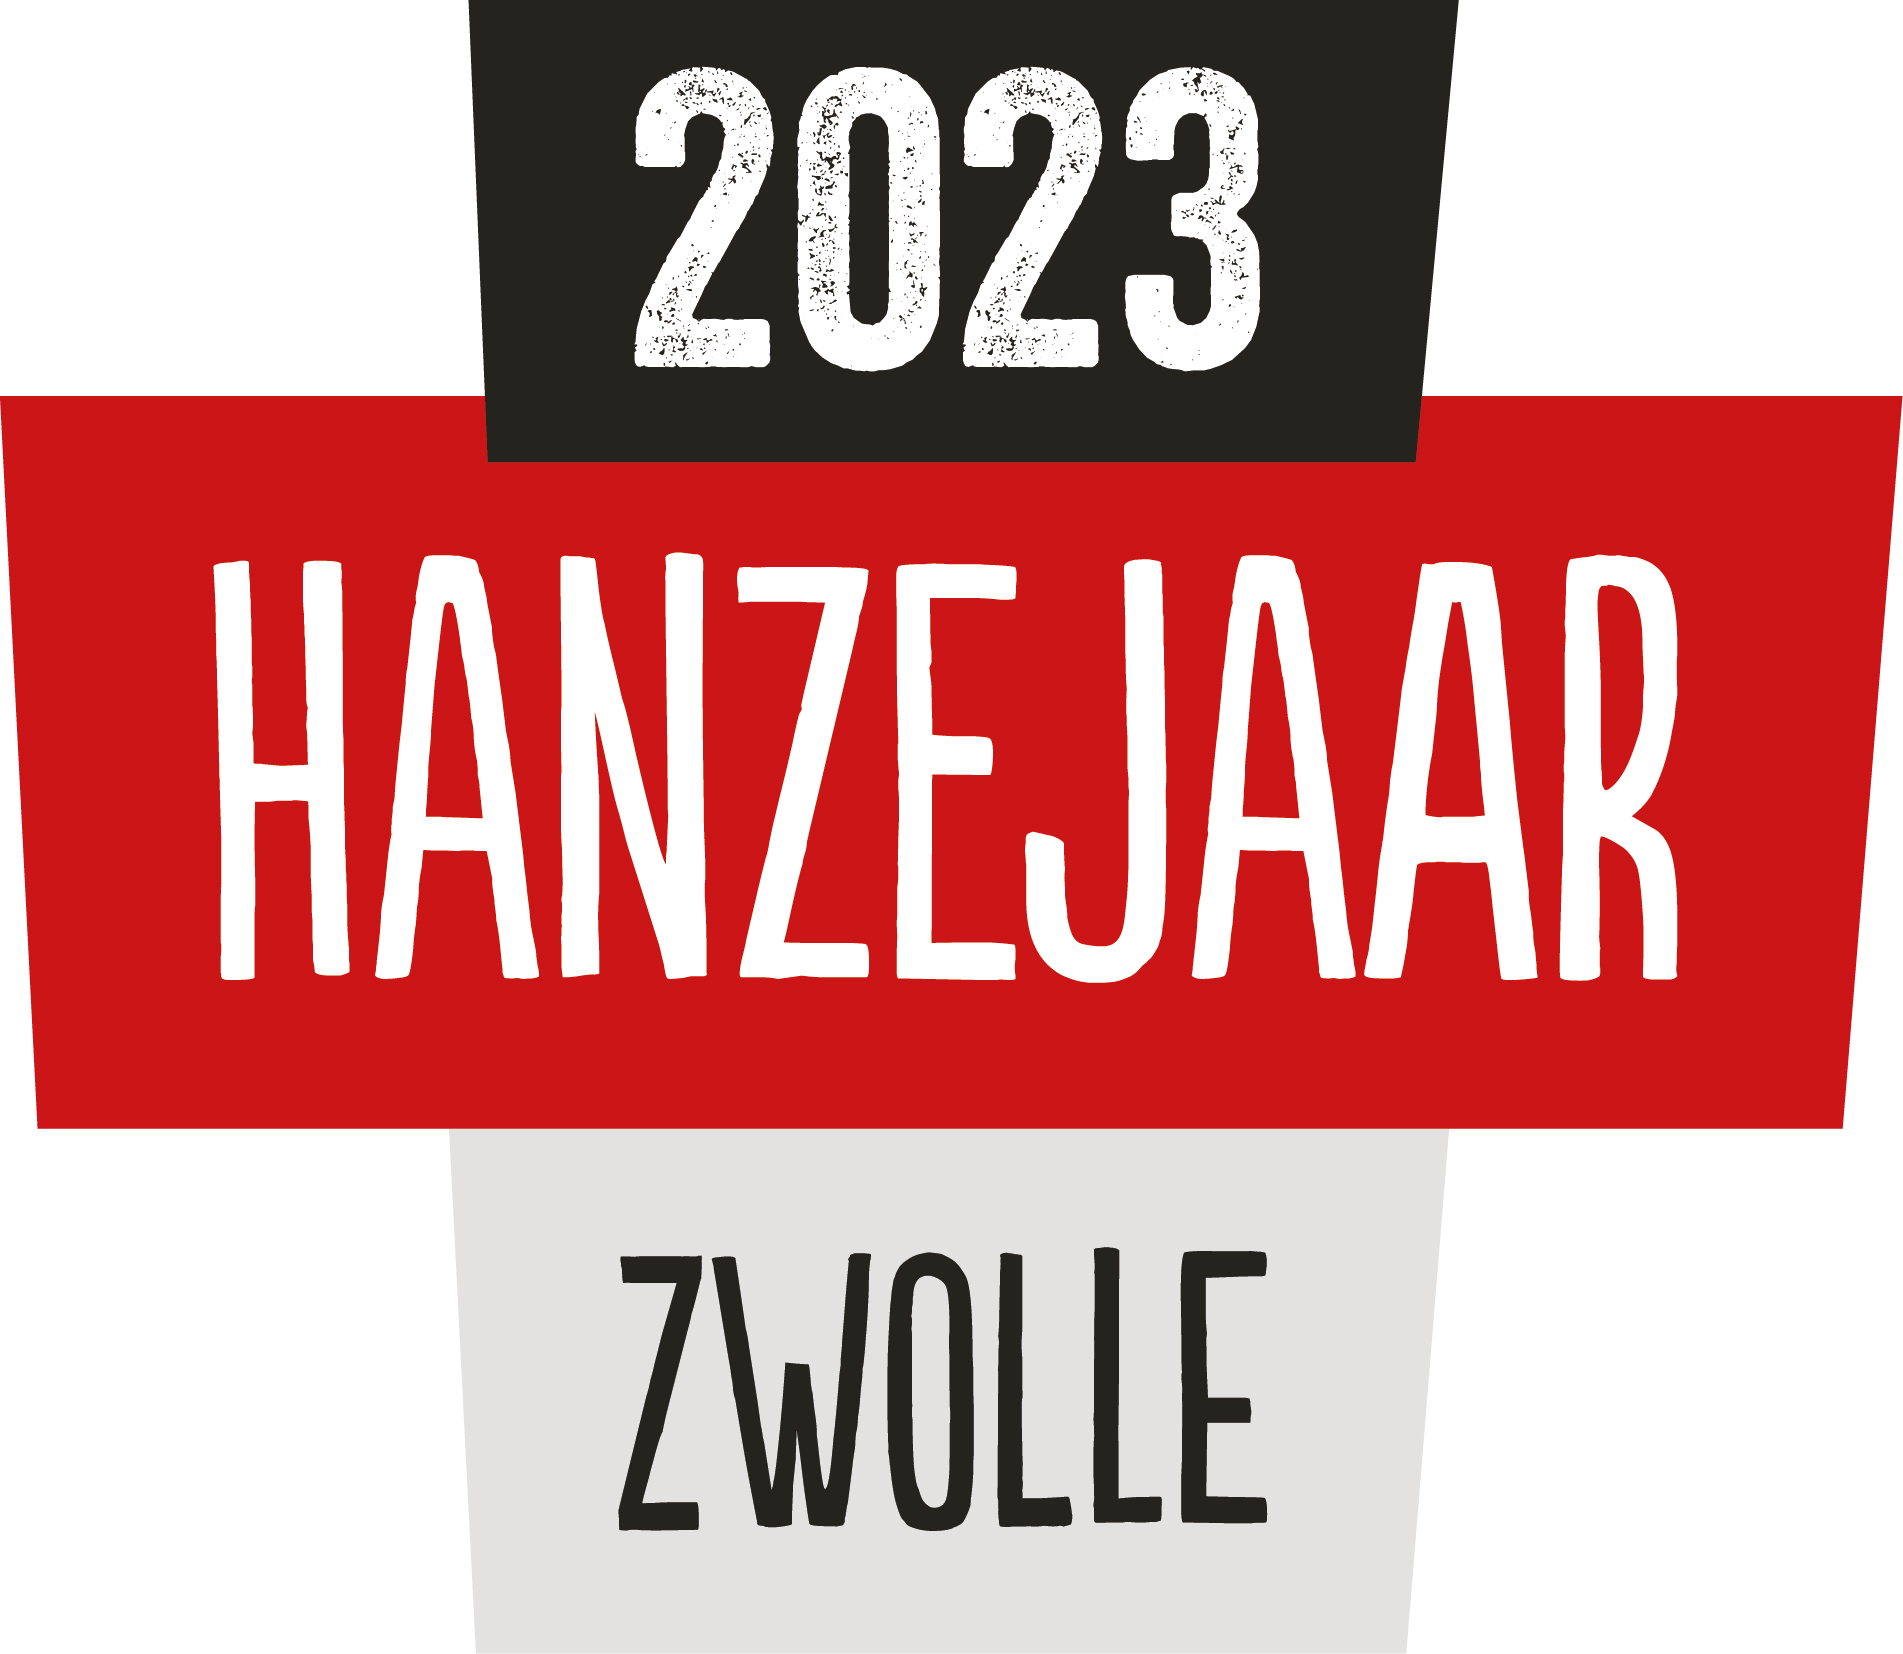 LOGO Hanzejaar Zwolle Rood